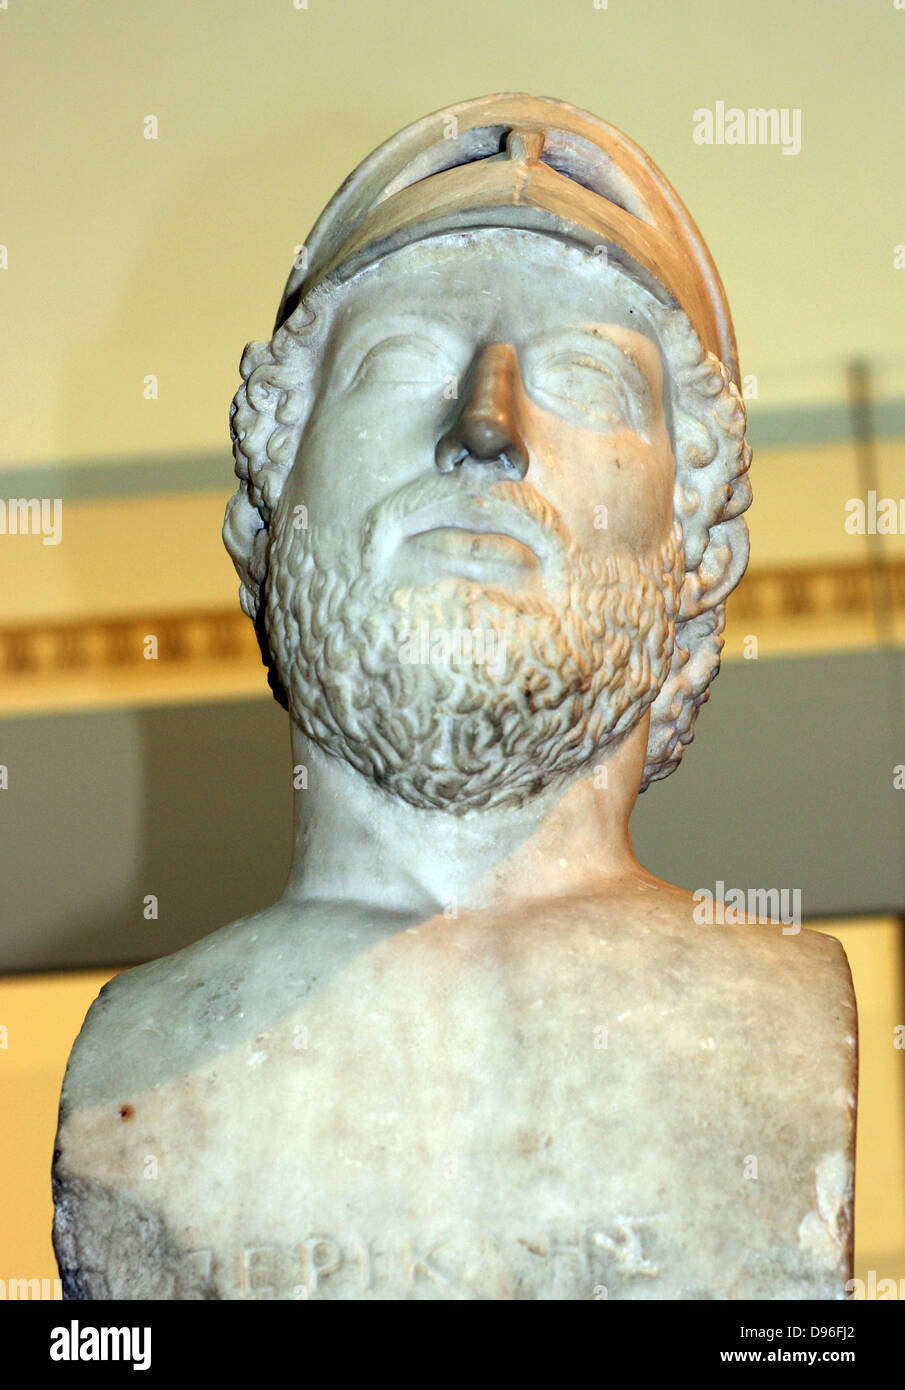 Sculpted Marmor Porträtkunst des Perikles, ehemaliger Herrscher von Athen. Roman, 2.Jahrhundert Kopie der griechischen Original ihn als Model Citizen Soldier. Stockfoto